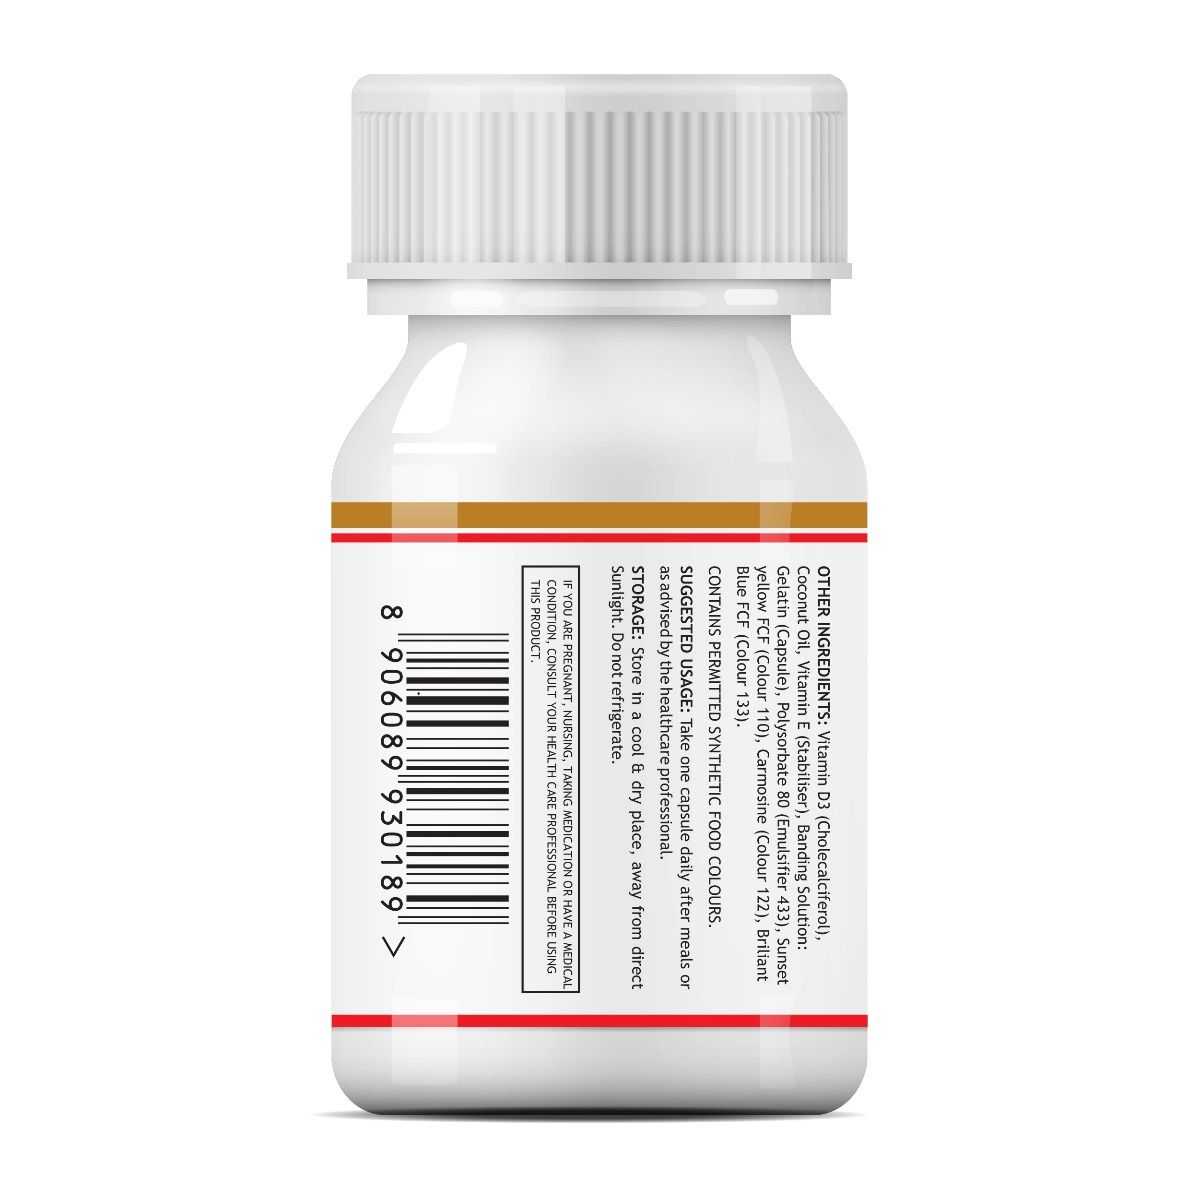 Inlife Vitamin D3 2000 IU, 60 Capsules, Pack of 1 